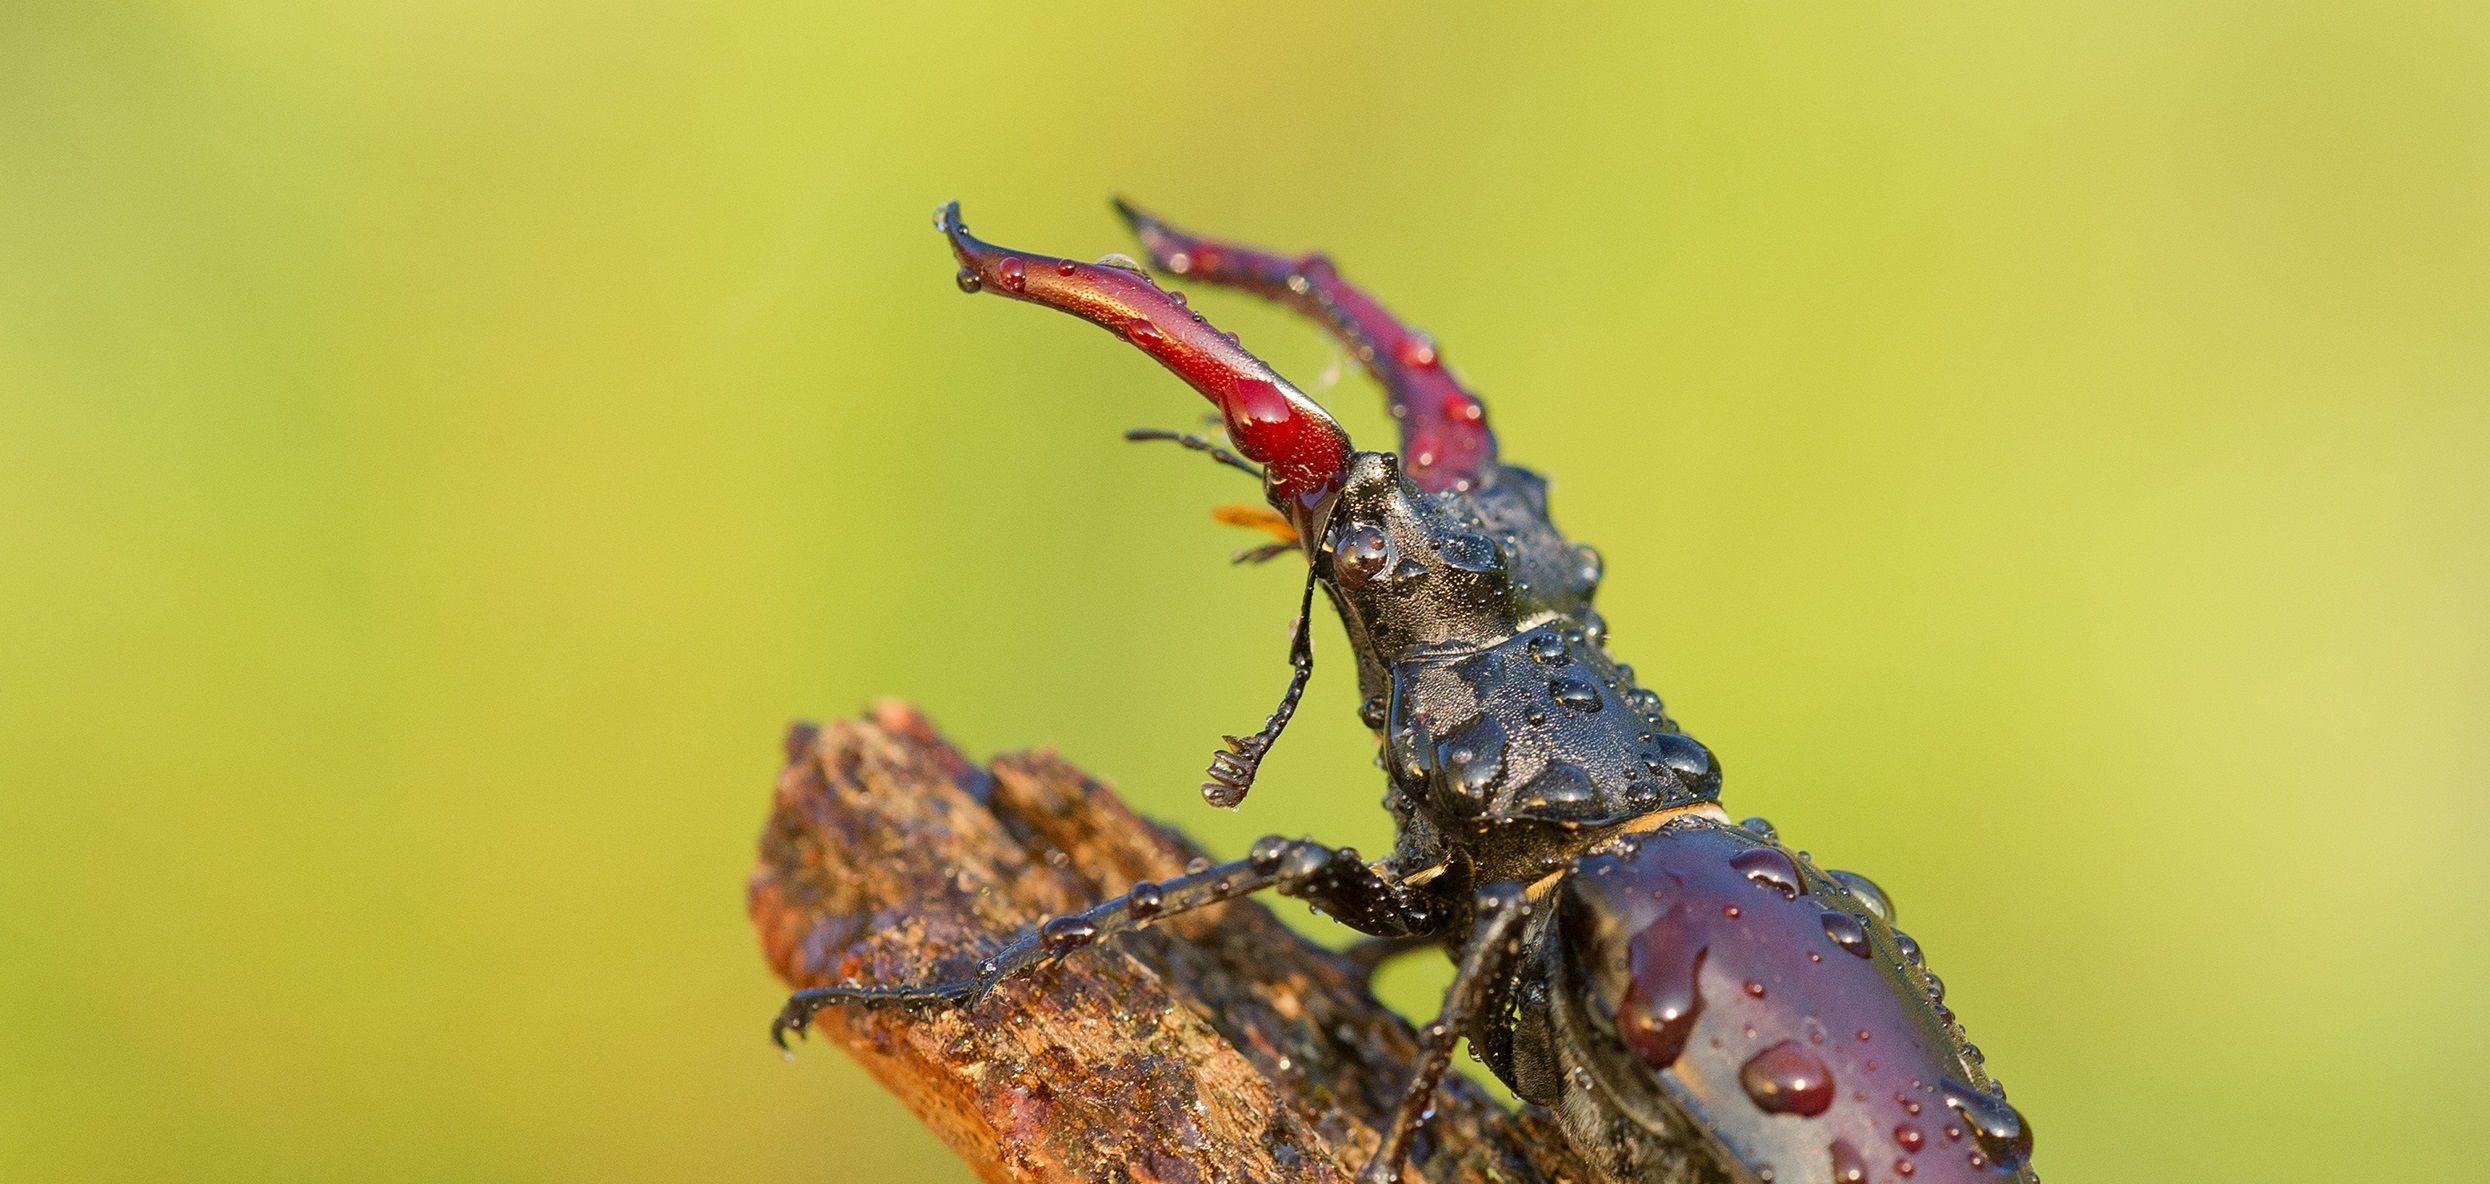 Stag beetle, Lucanus Cervus on dead tree